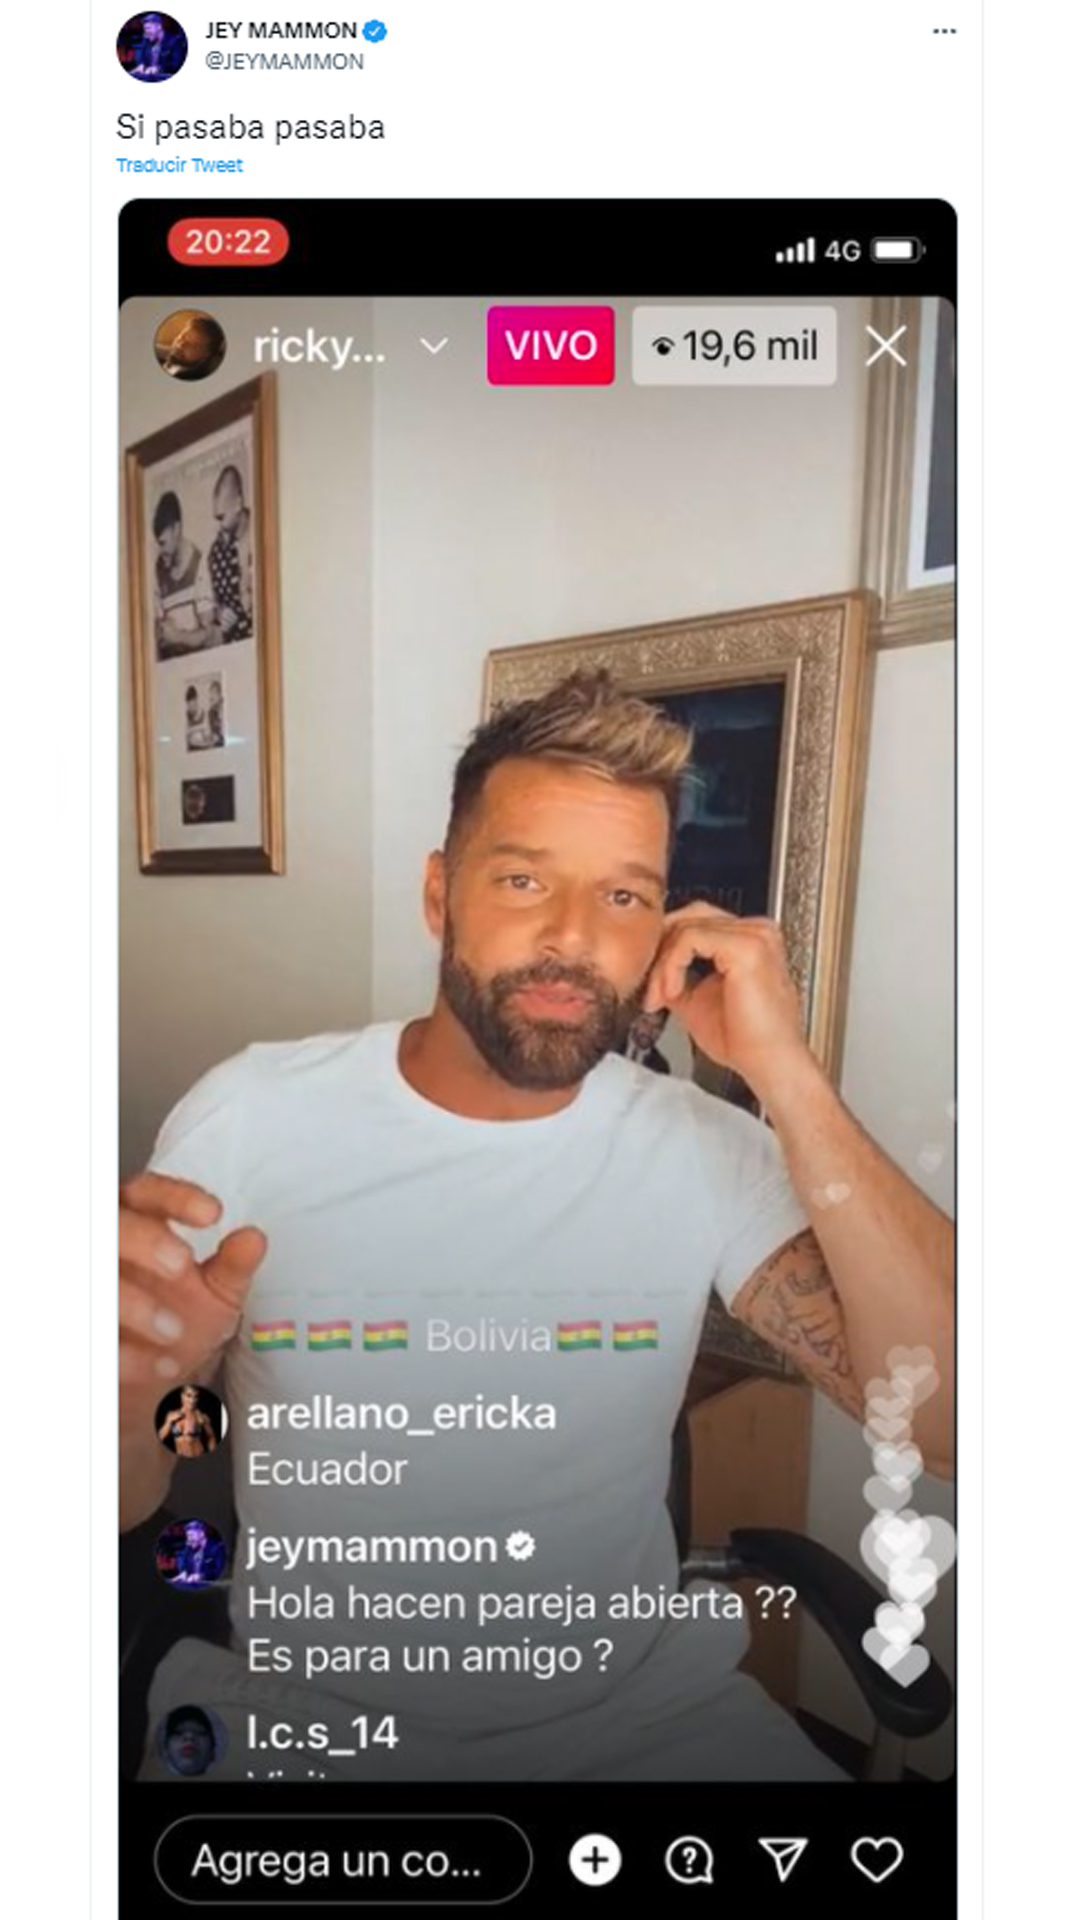 El conductor compartió una captura de su comentario durante el directo de Ricky Martin